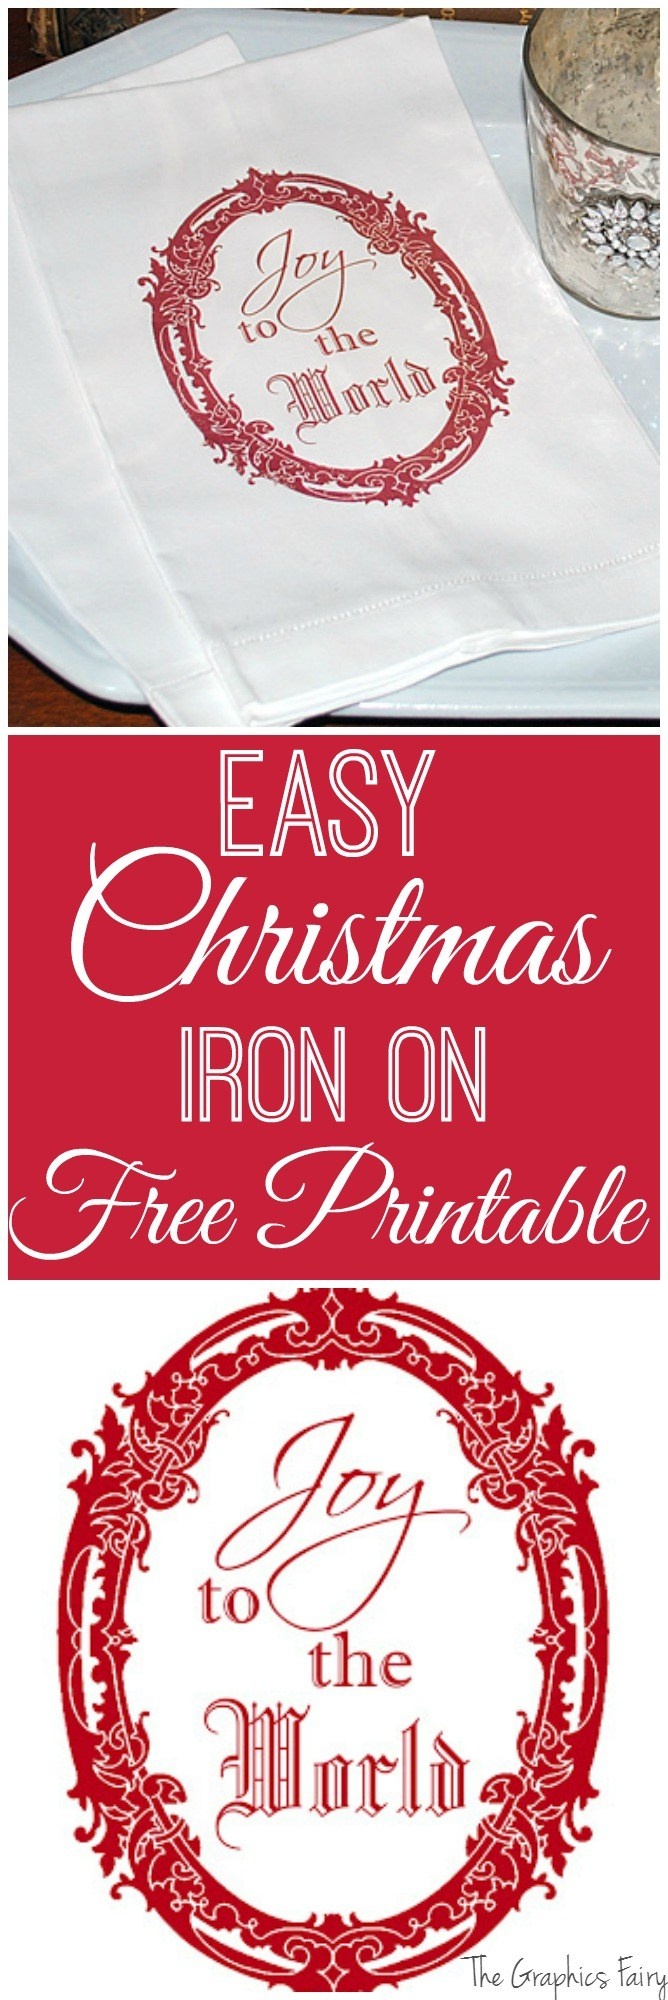 Free Printable Christmas Iron On Transfers – Festival Collections - Free Printable Christmas Iron On Transfers